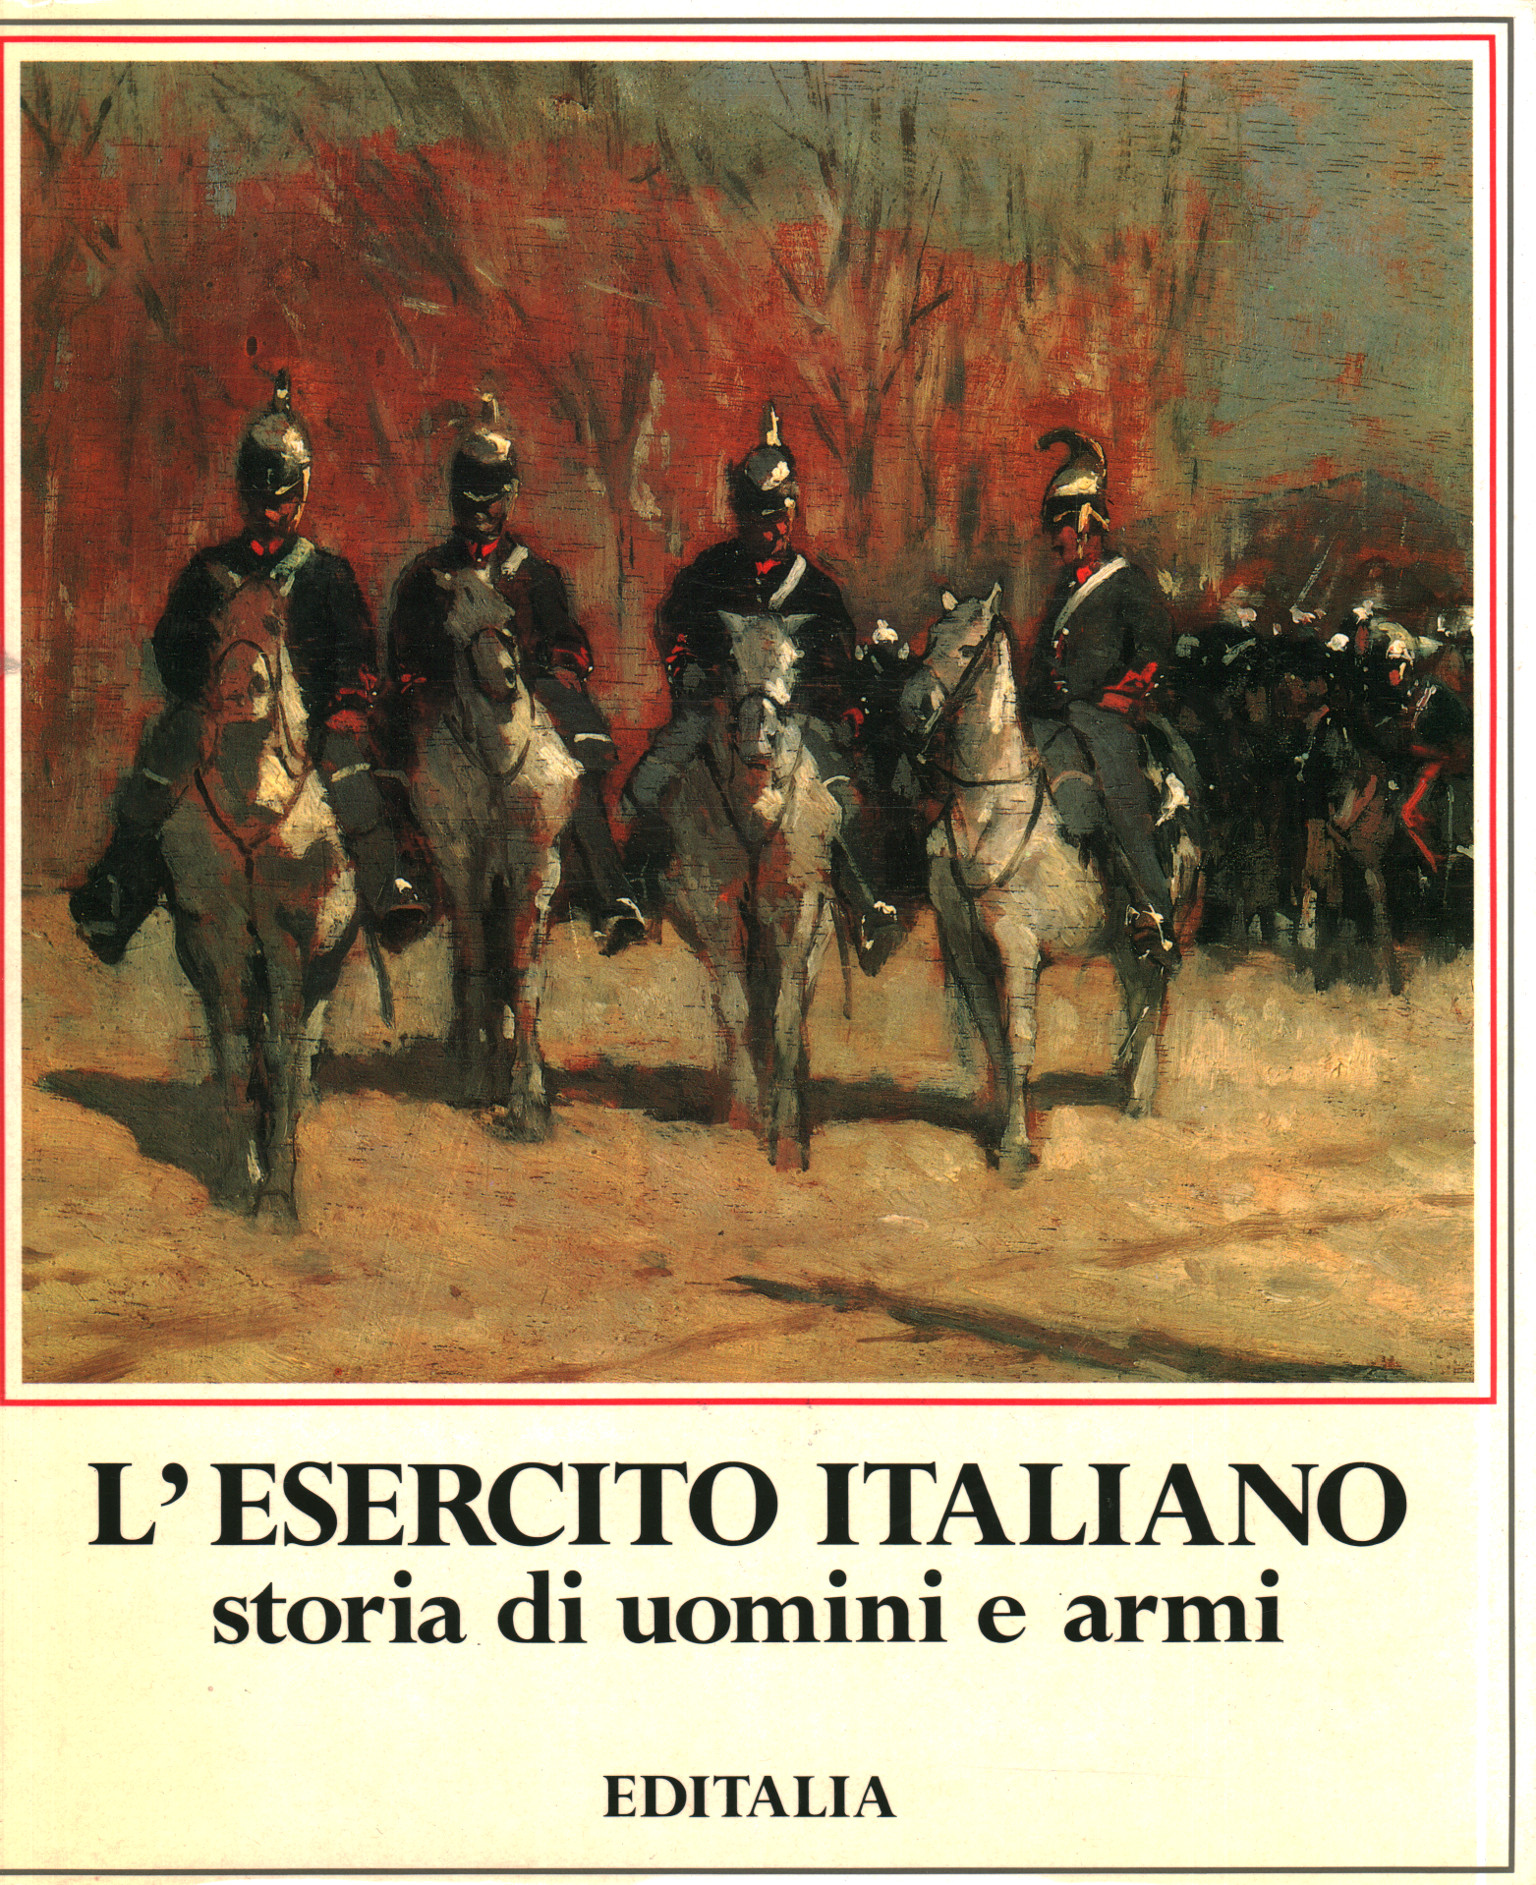 L'esercito italiano storia di uomini e armi, Arrigo Pecchioli